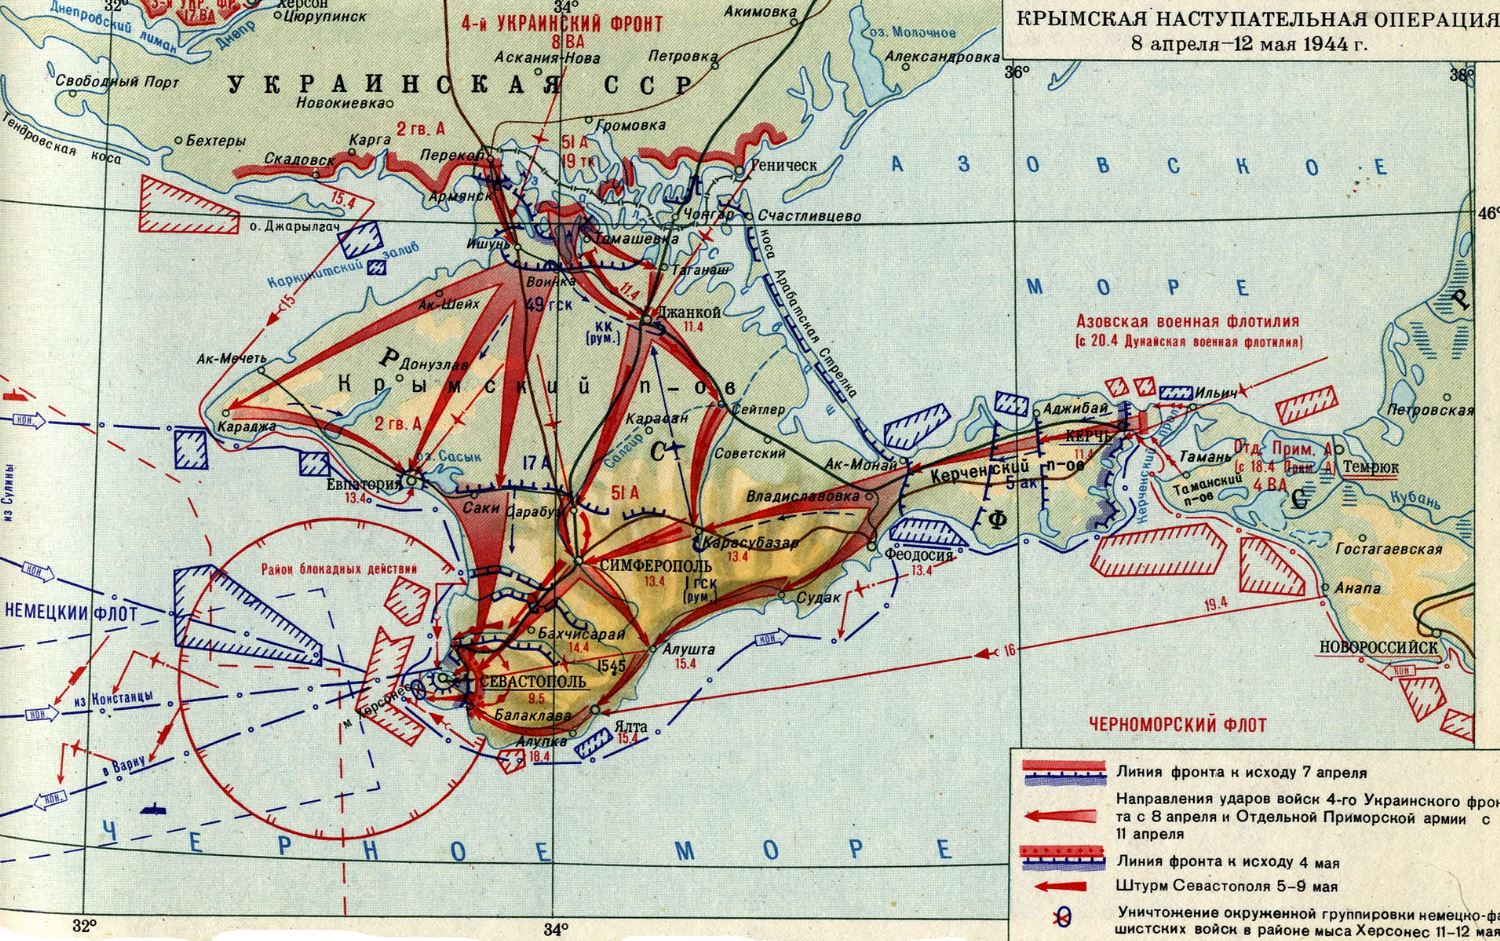 Крымская операция 1944 года стала днем воинской славы